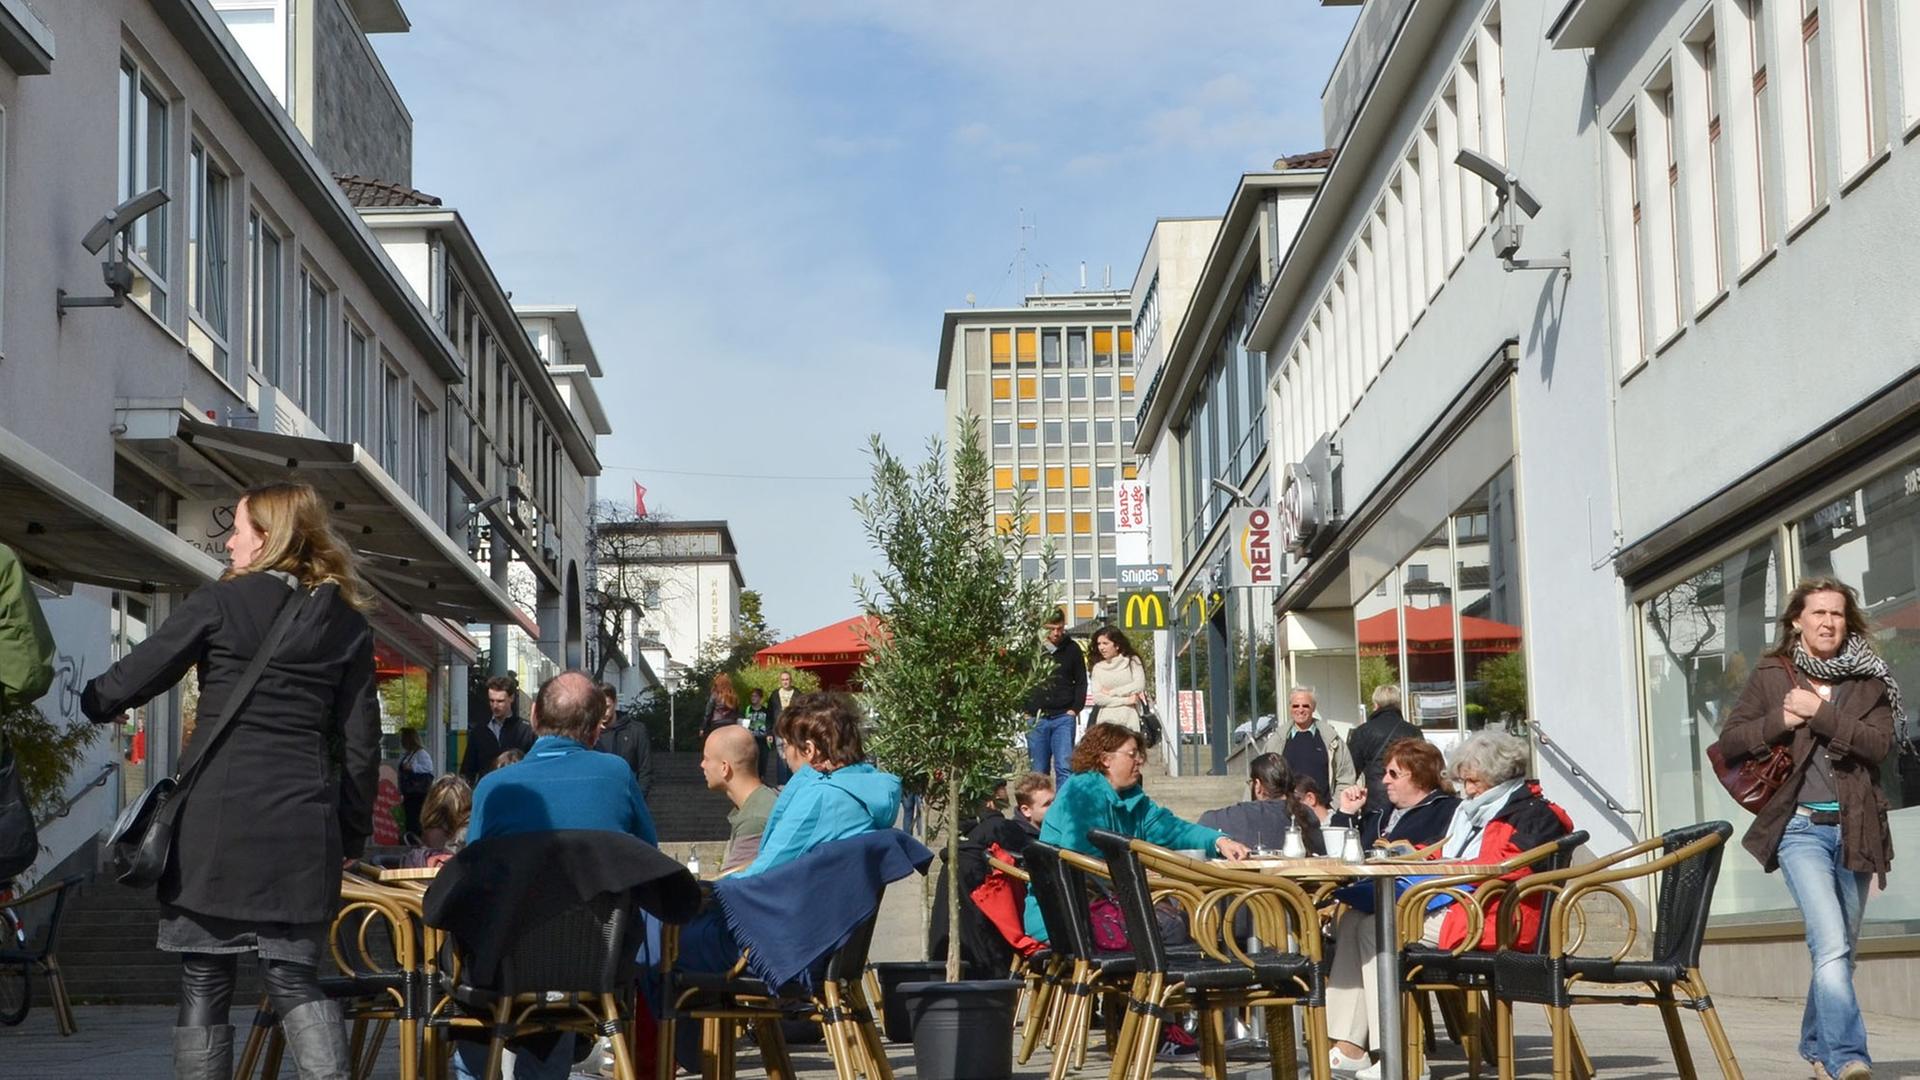 Die Treppenstraße in Kassel (Hessen), aufgenommen am 04.10.2013. Sie gilt als erste Fußgängerzone Deutschlands und wurde im November vor 60 Jahren eröffnet.